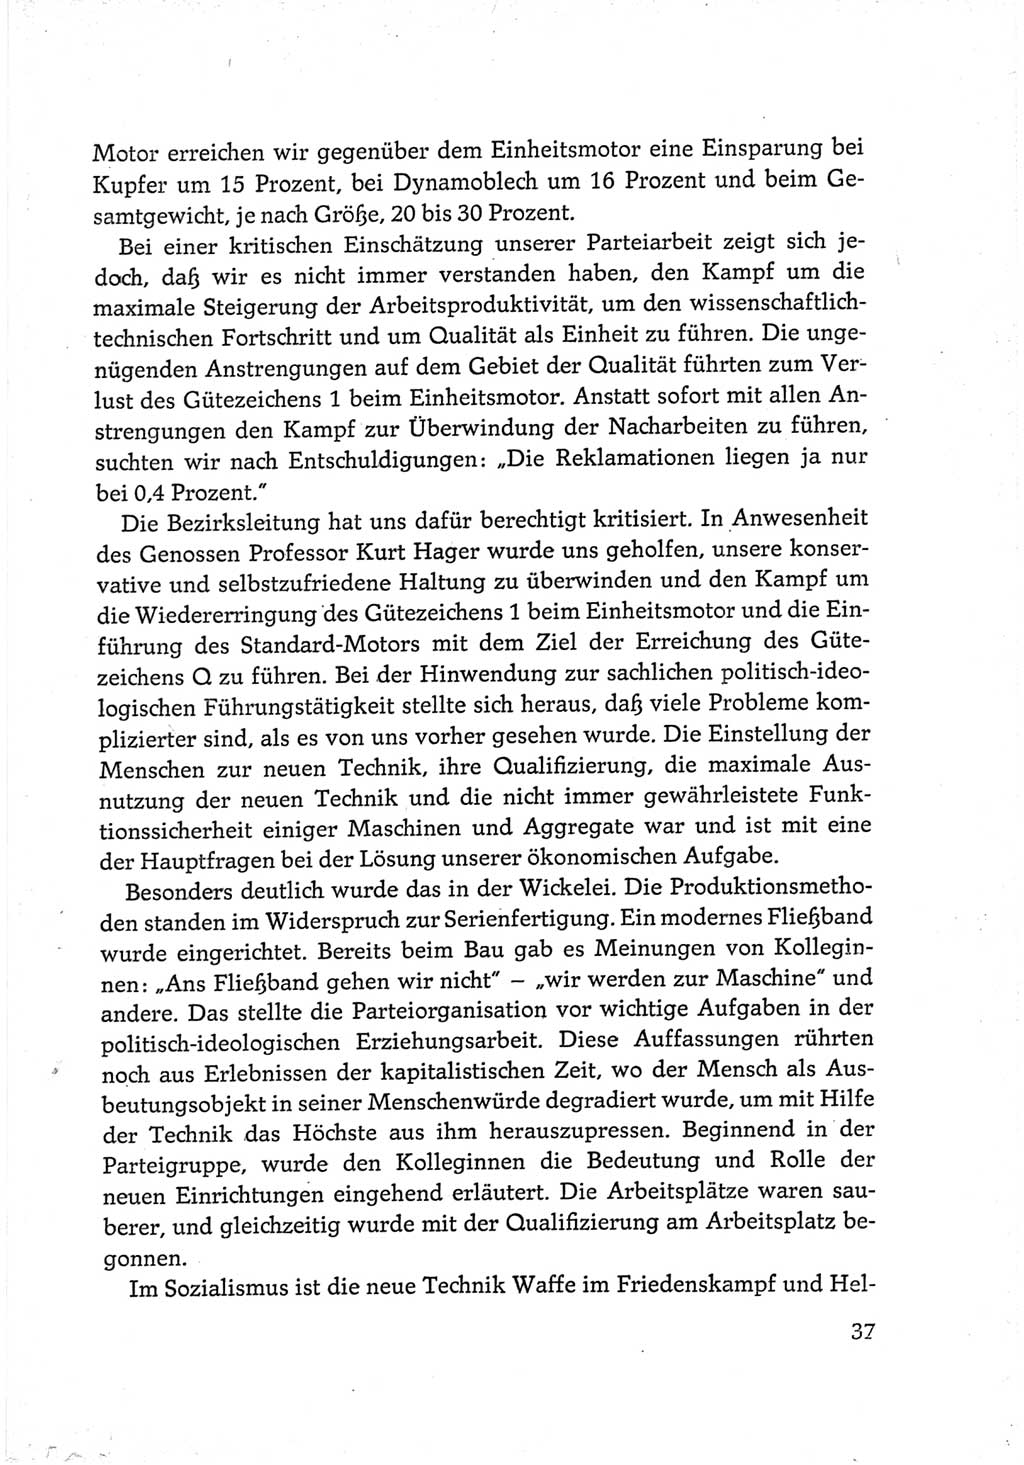 Protokoll der Verhandlungen des Ⅵ. Parteitages der Sozialistischen Einheitspartei Deutschlands (SED) [Deutsche Demokratische Republik (DDR)] 1963, Band Ⅲ, Seite 37 (Prot. Verh. Ⅵ. PT SED DDR 1963, Bd. Ⅲ, S. 37)